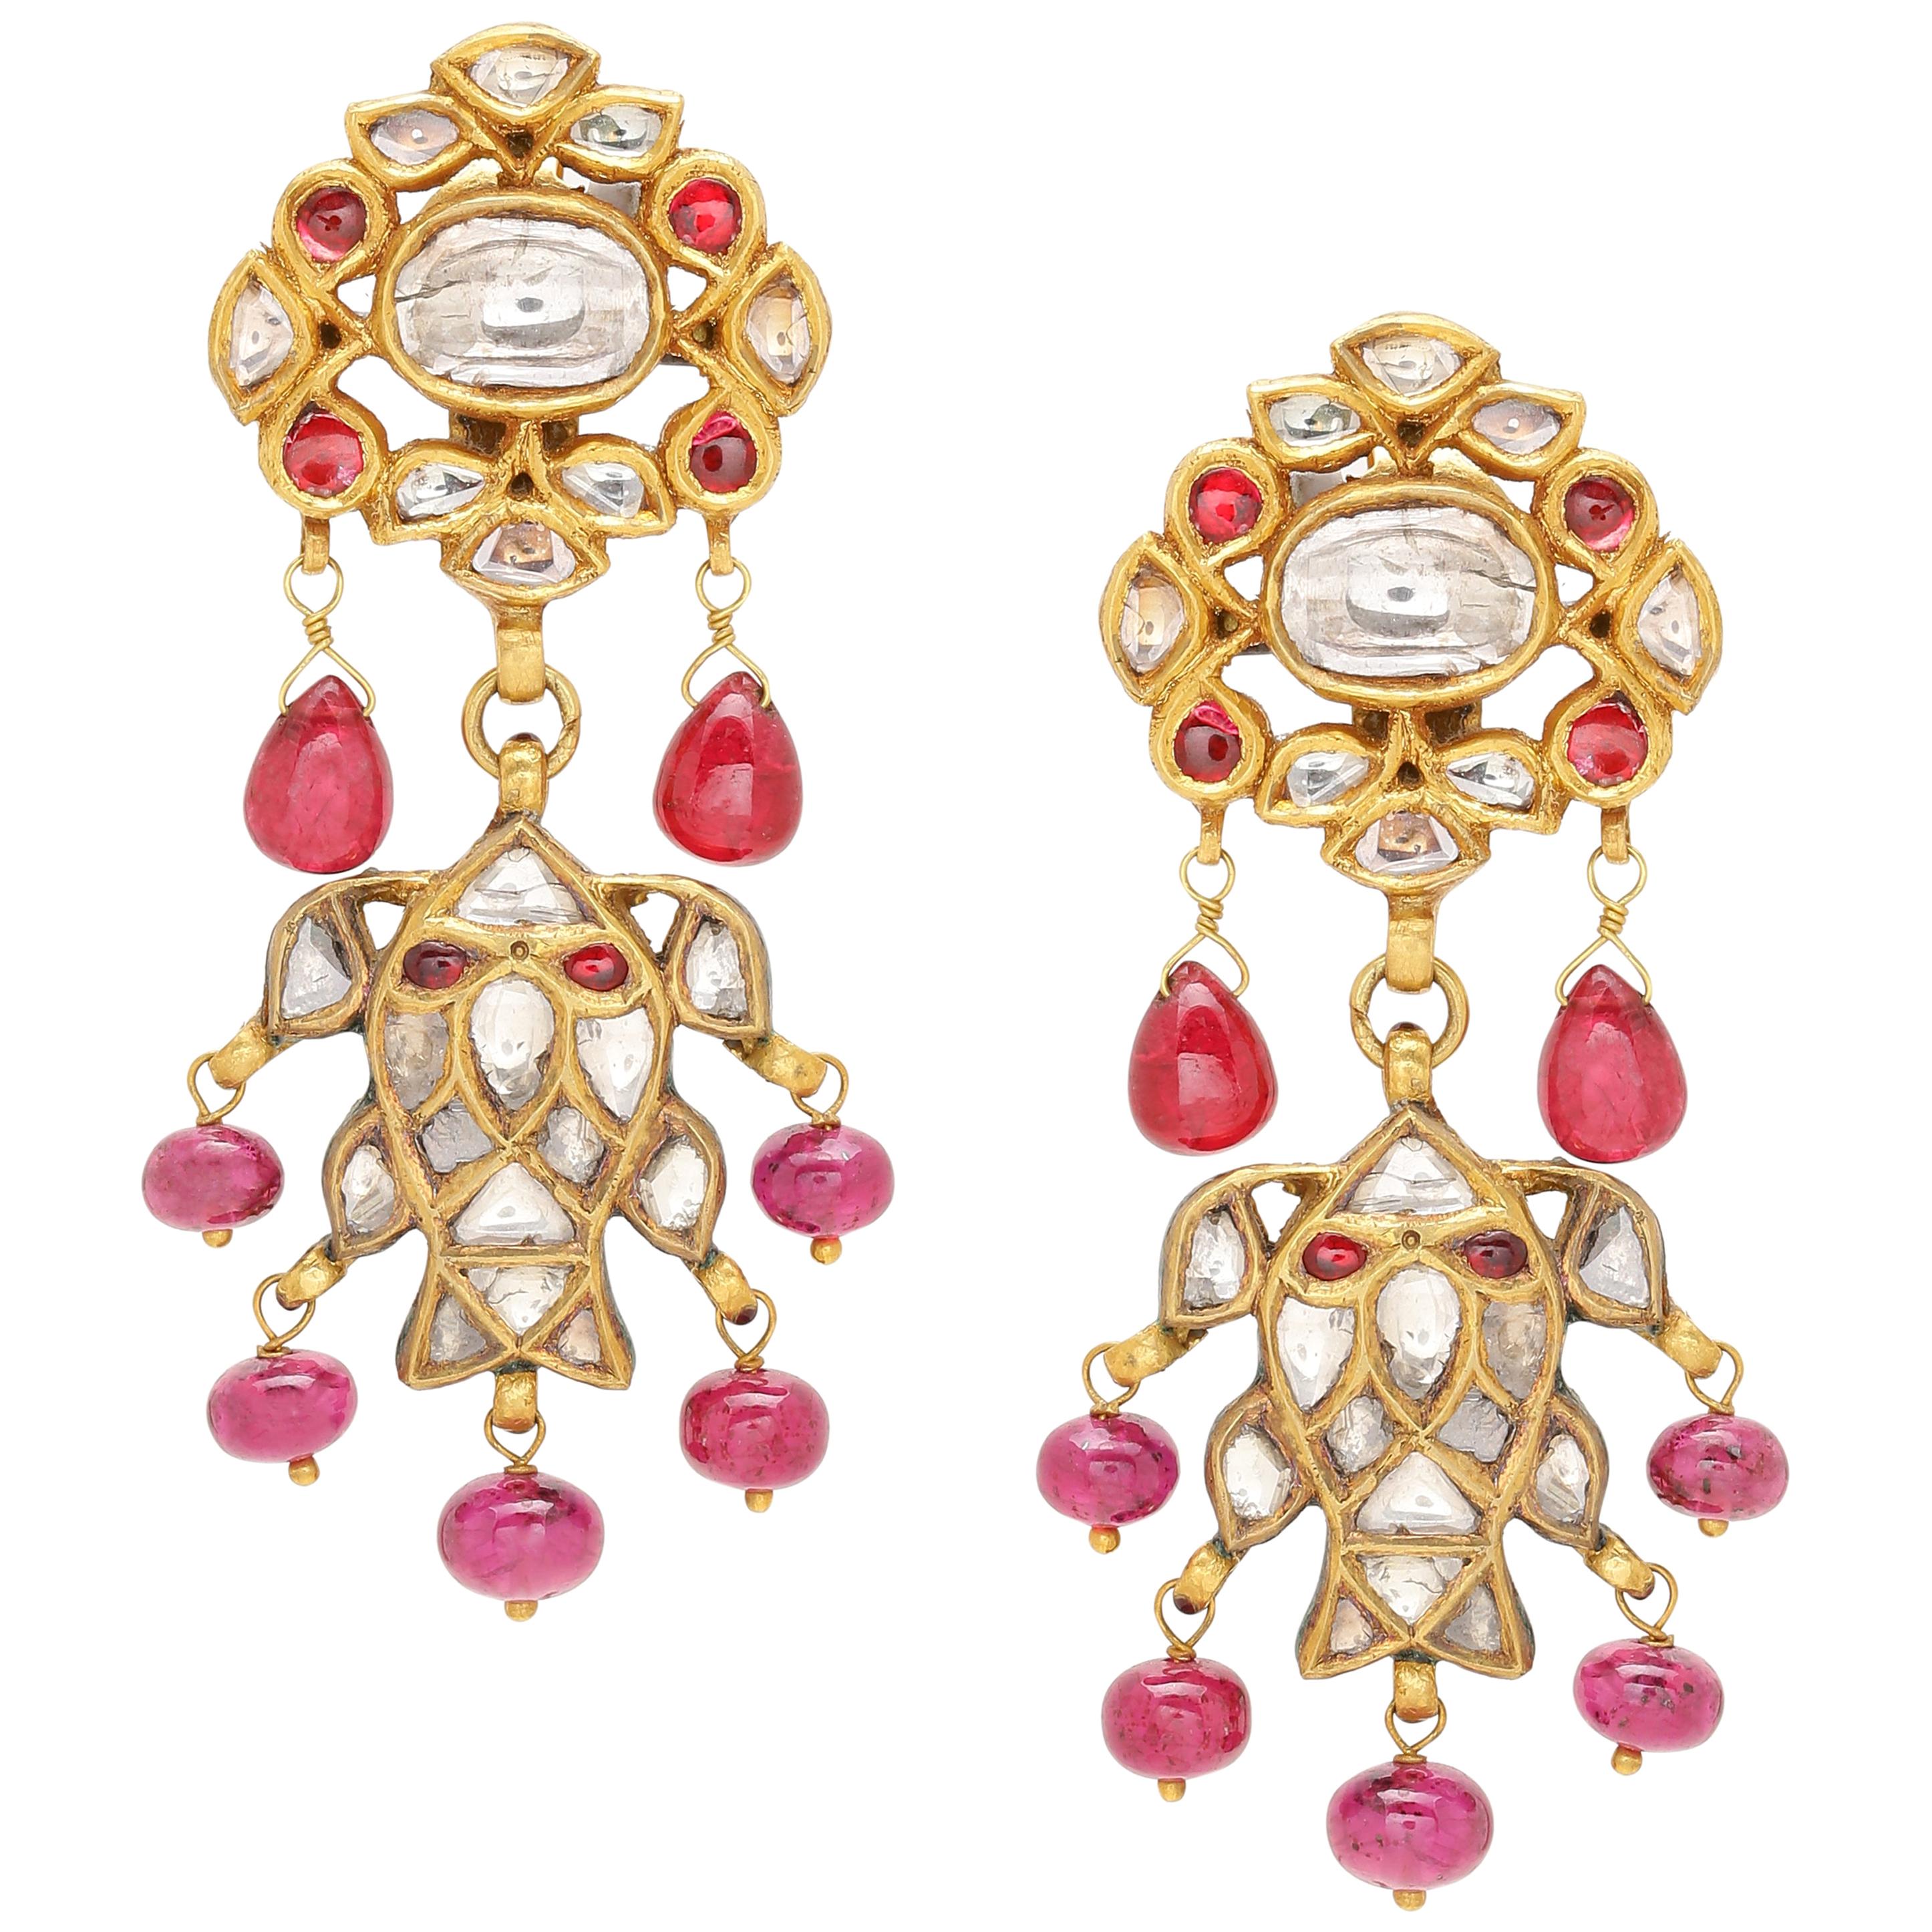 Ohrringe mit Diamanten, Rubinen und Spinellen, handgefertigt aus 18 Karat Gold mit Emaille